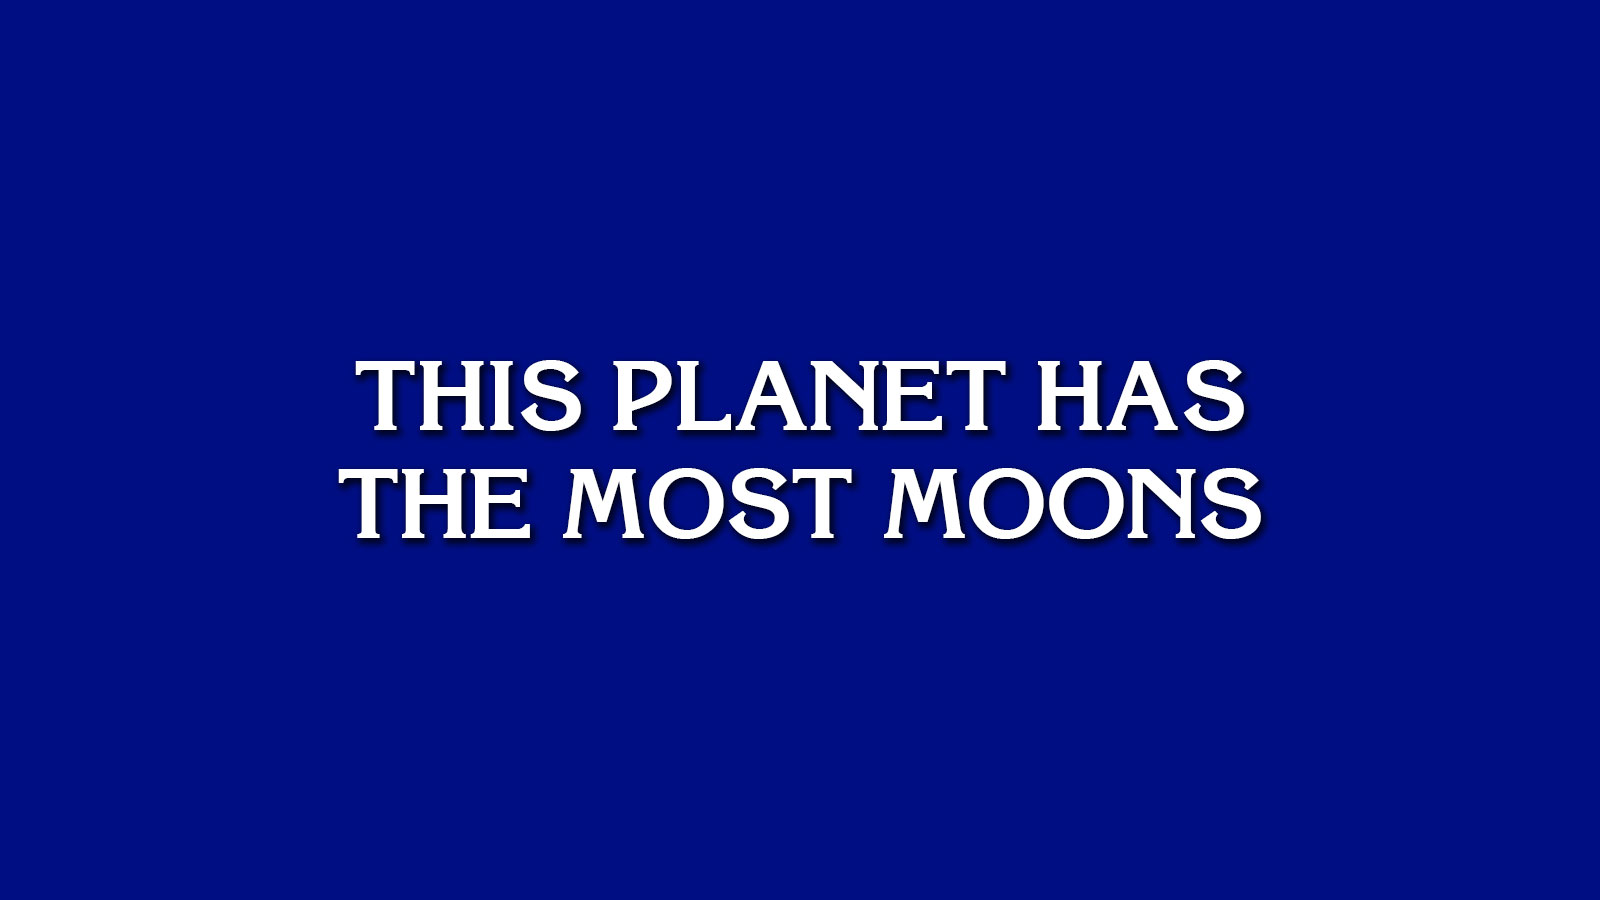 ¿Podrás superar el sencillo juego “Jeopardy!” prueba